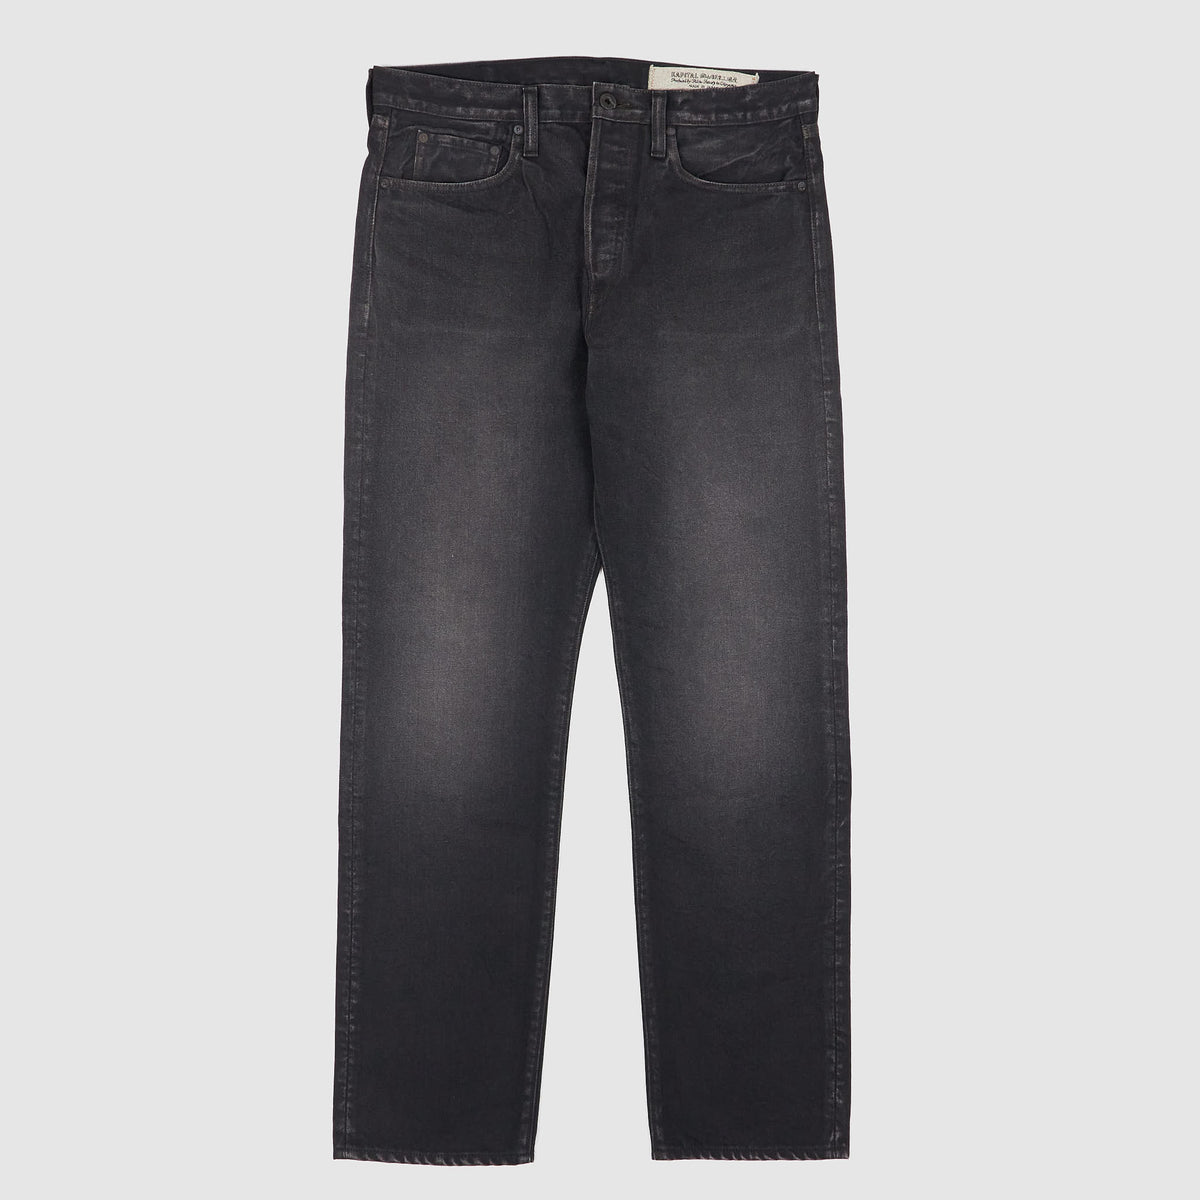 Kapital 5-Pocket Monkey Cisco 5 Pocket Vintage Washed Black Denim Jeans